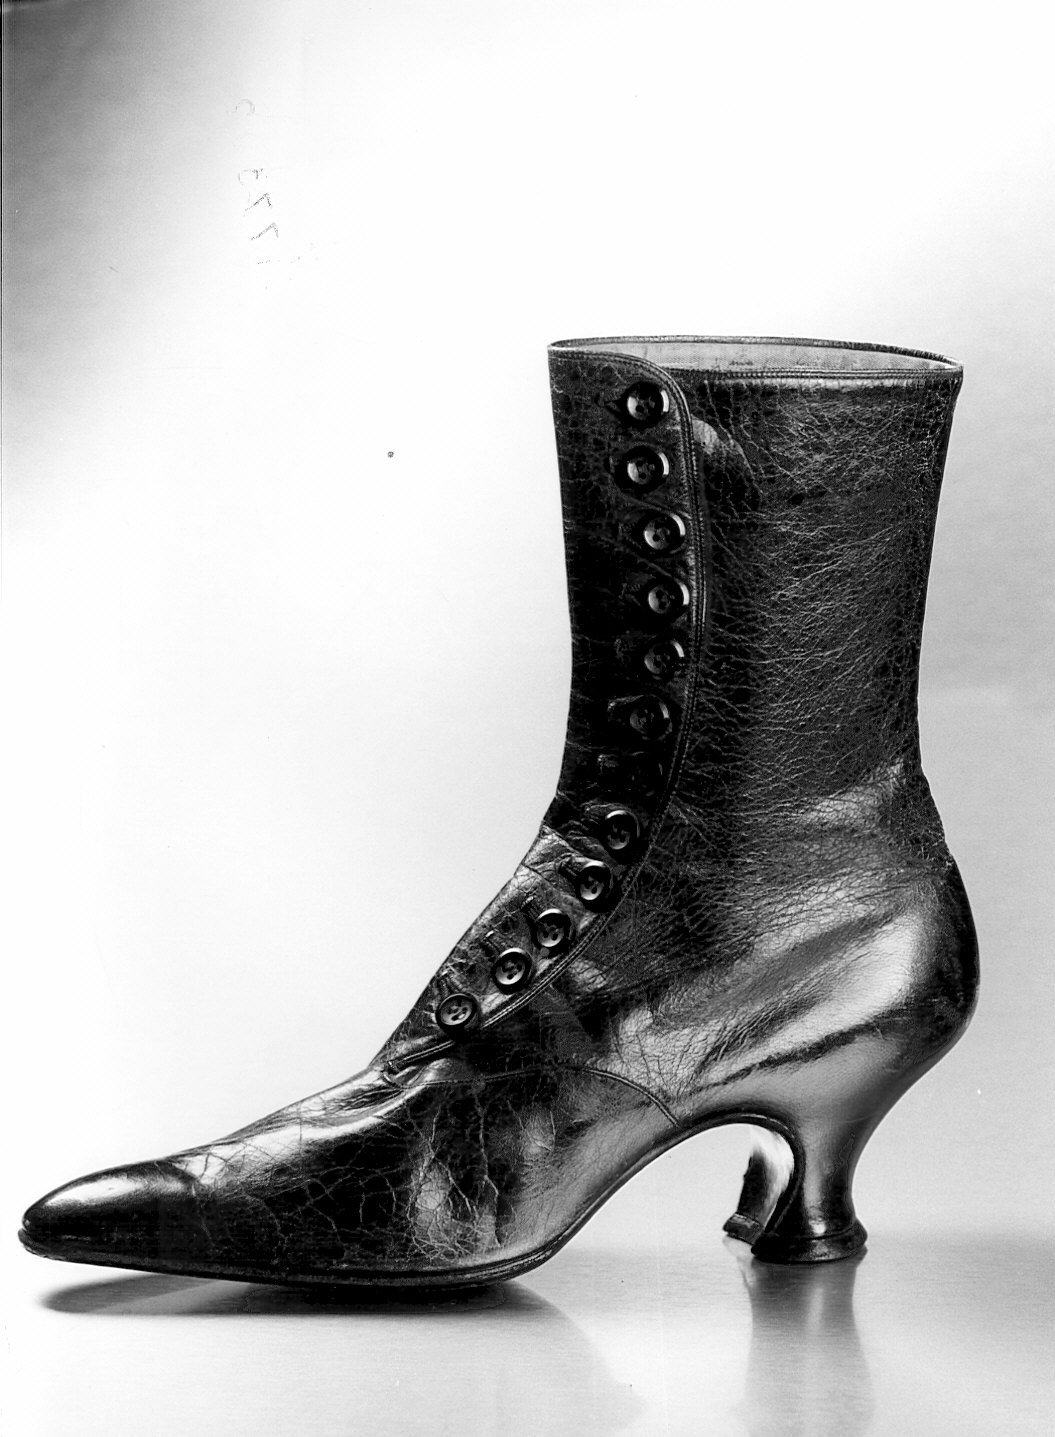 Non rilevato (scarpa femminile) - manifattura (1907/ 1907)